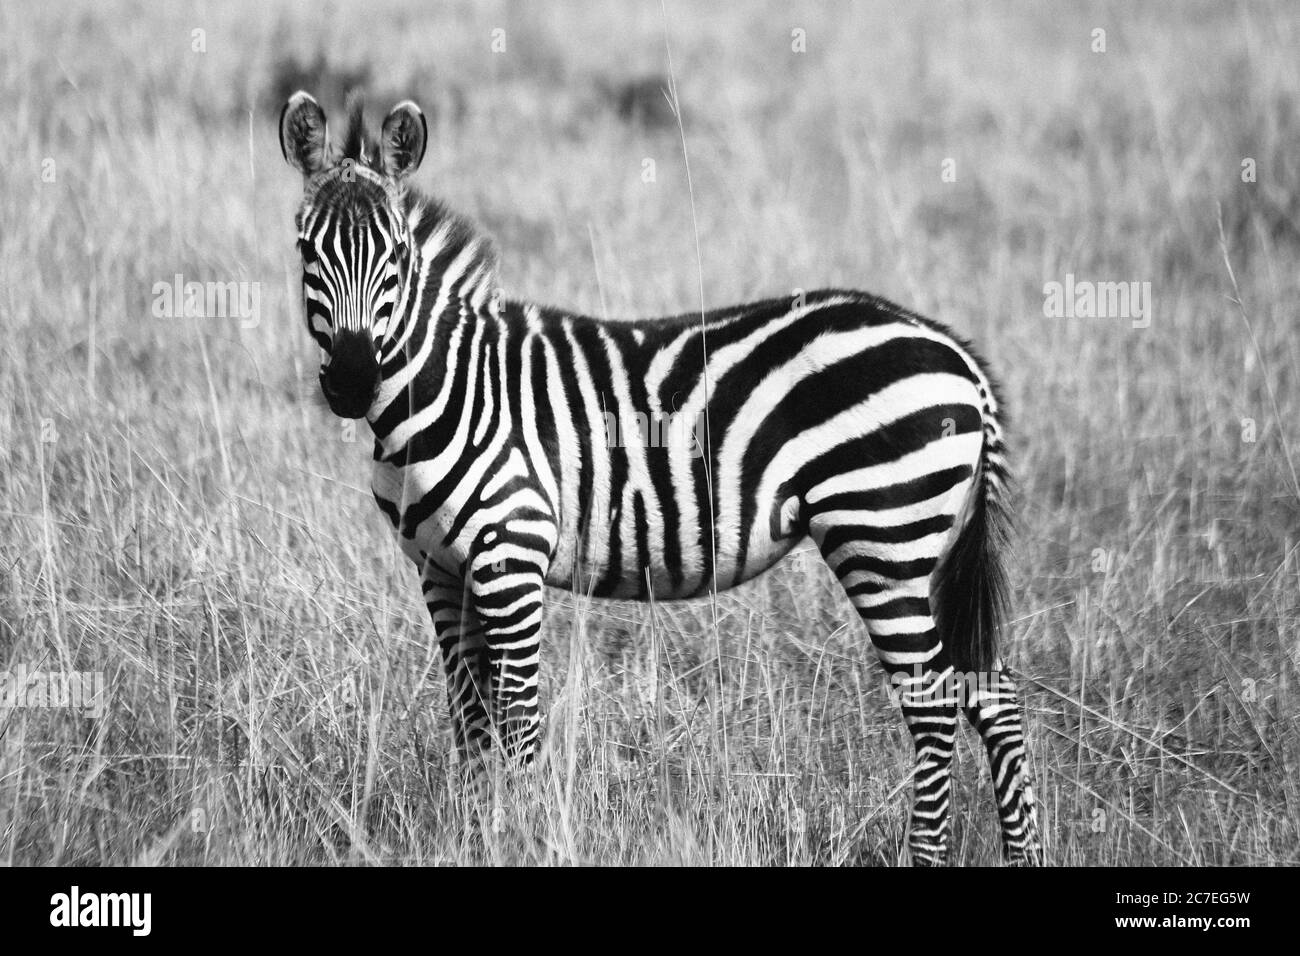 Graustufenaufnahme eines einsamen Zebras in einem grasbewachsenen Feld - toll für einen coolen Hintergrund Stockfoto